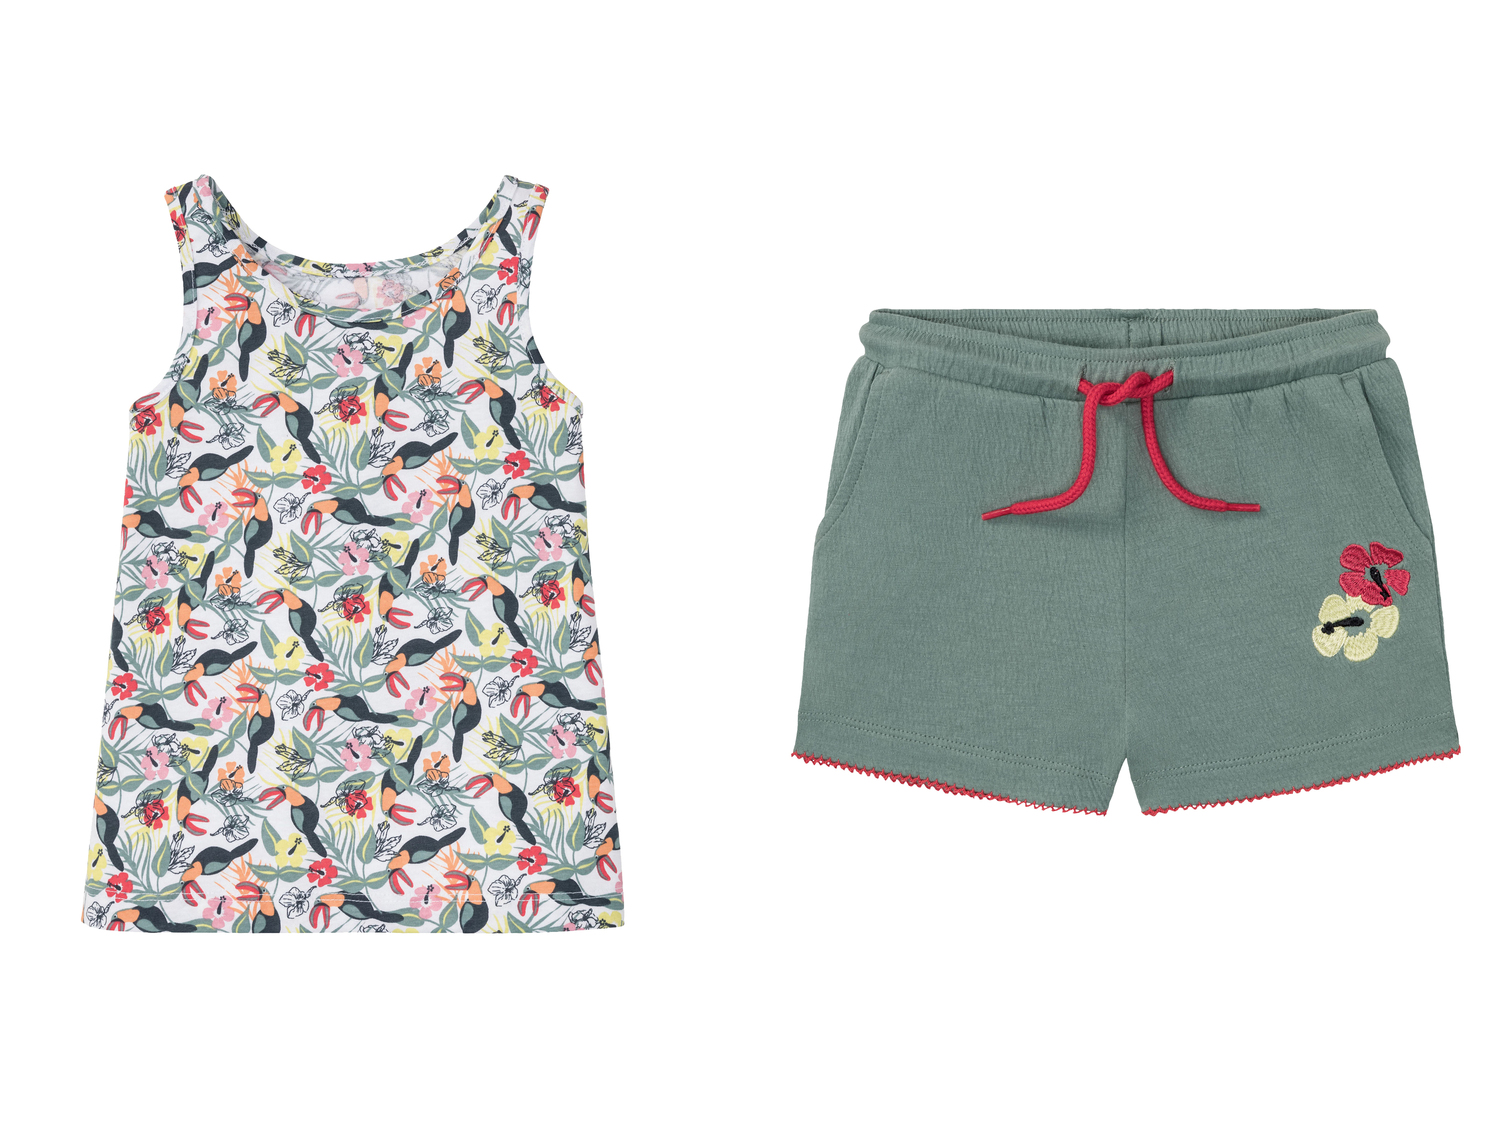 Completo top e shorts da bambina Lupilu, prezzo 4.99 &#8364; 
Misure: 1-6 anni
Taglie ...